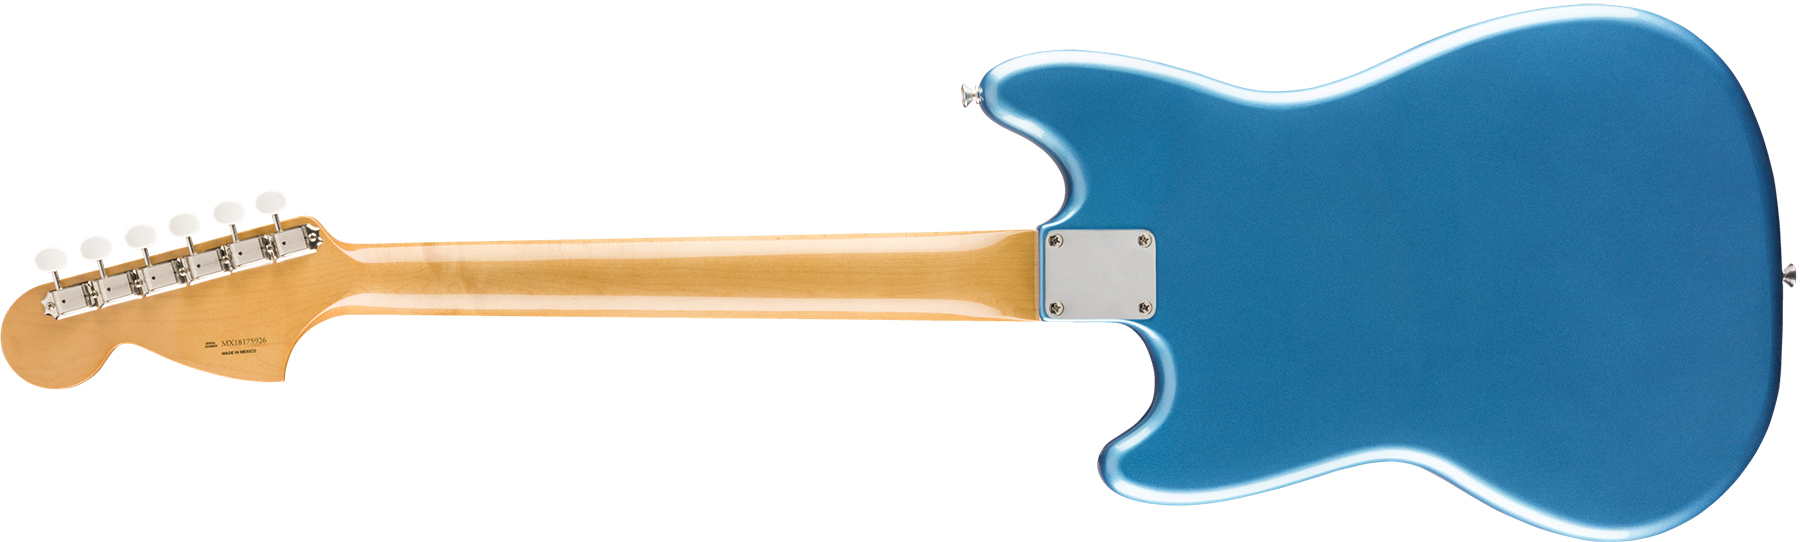 Fender Mustang 60s Vintera Vintage Mex Pf - Lake Placid Blue - Retro-rock elektrische gitaar - Variation 1